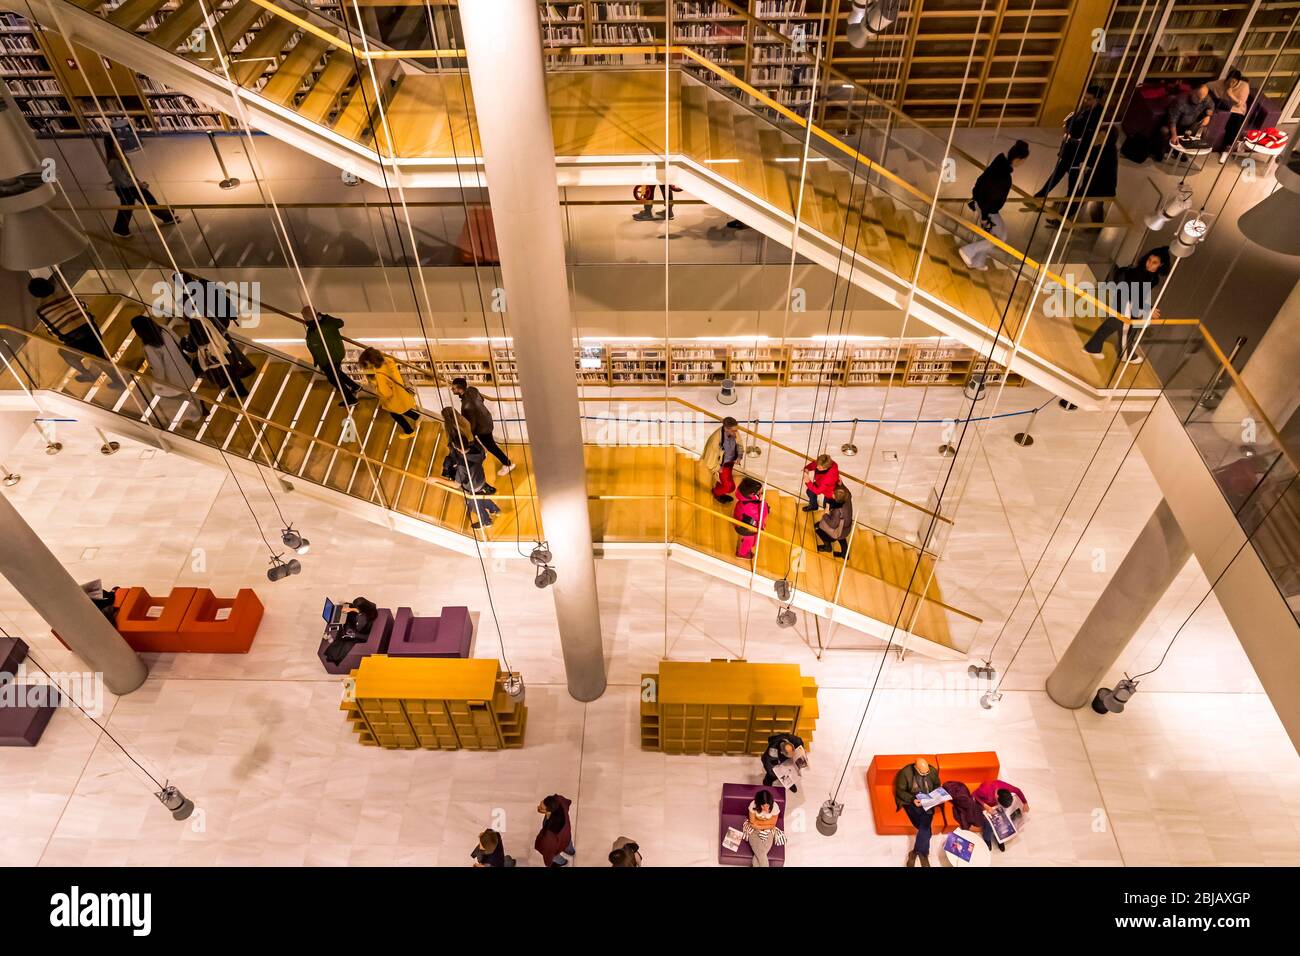 Athen, Griechenland - 15. Dezember 2019: Innenräume des neuen Gebäudes der Nationalbibliothek von Griechenland in Stavros Niarchos Foundation Cultural Center (SNFCC) Stockfoto